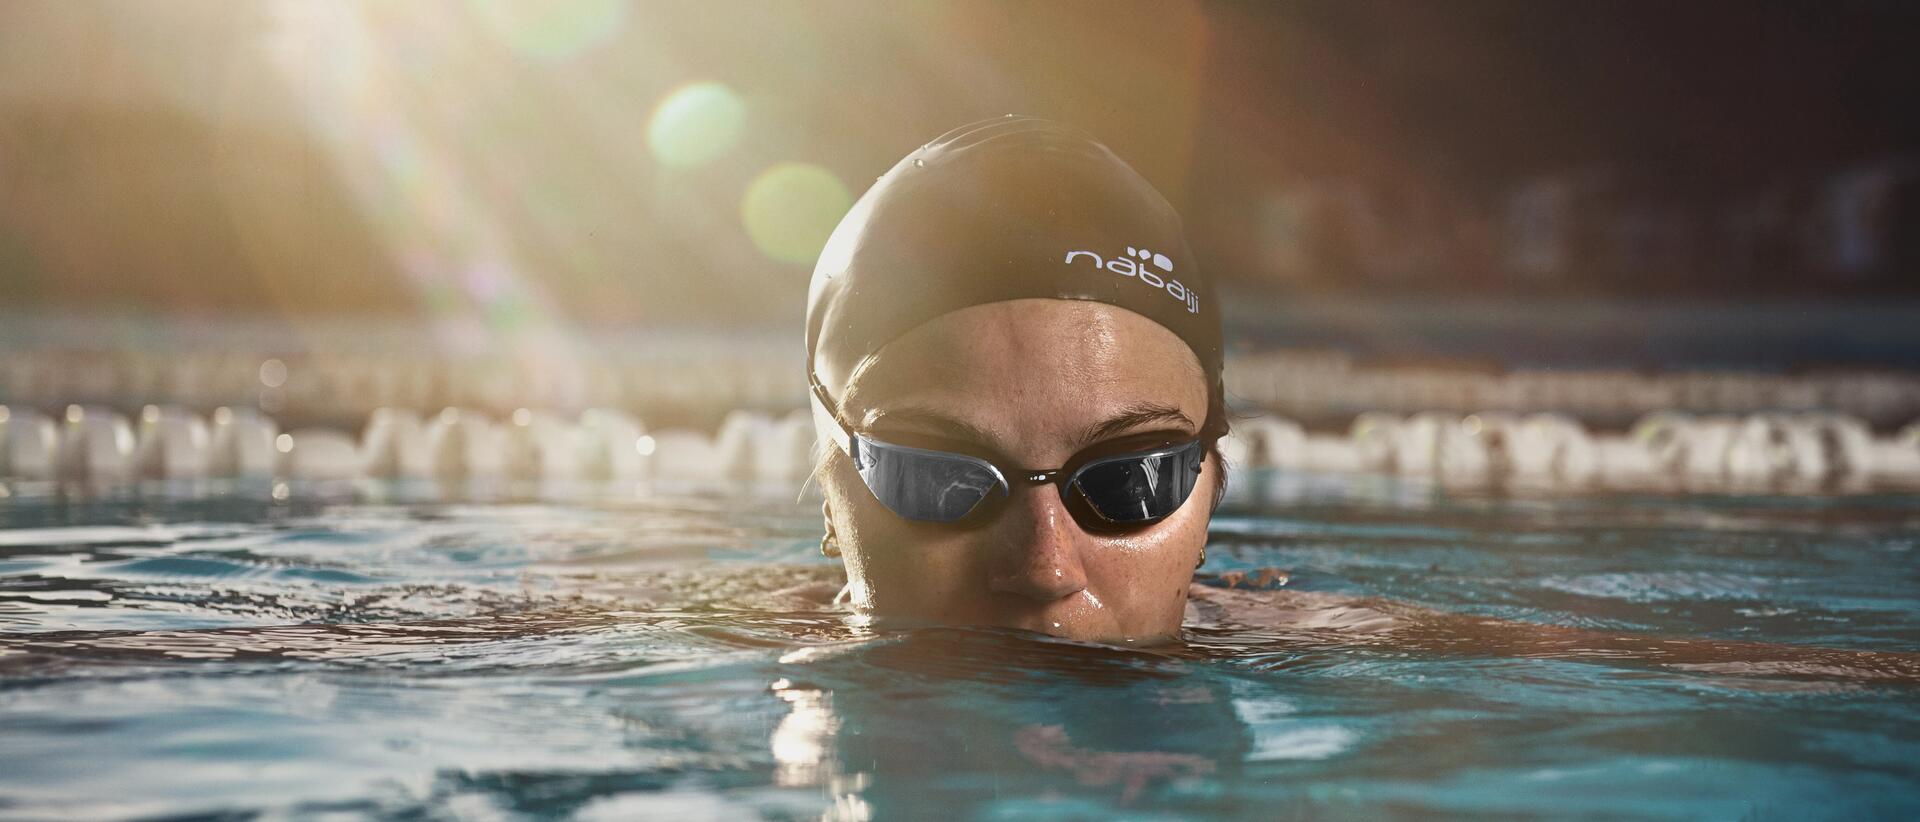 osoba w czepku i okularach pływackich zanurzona w wodzie na basenie